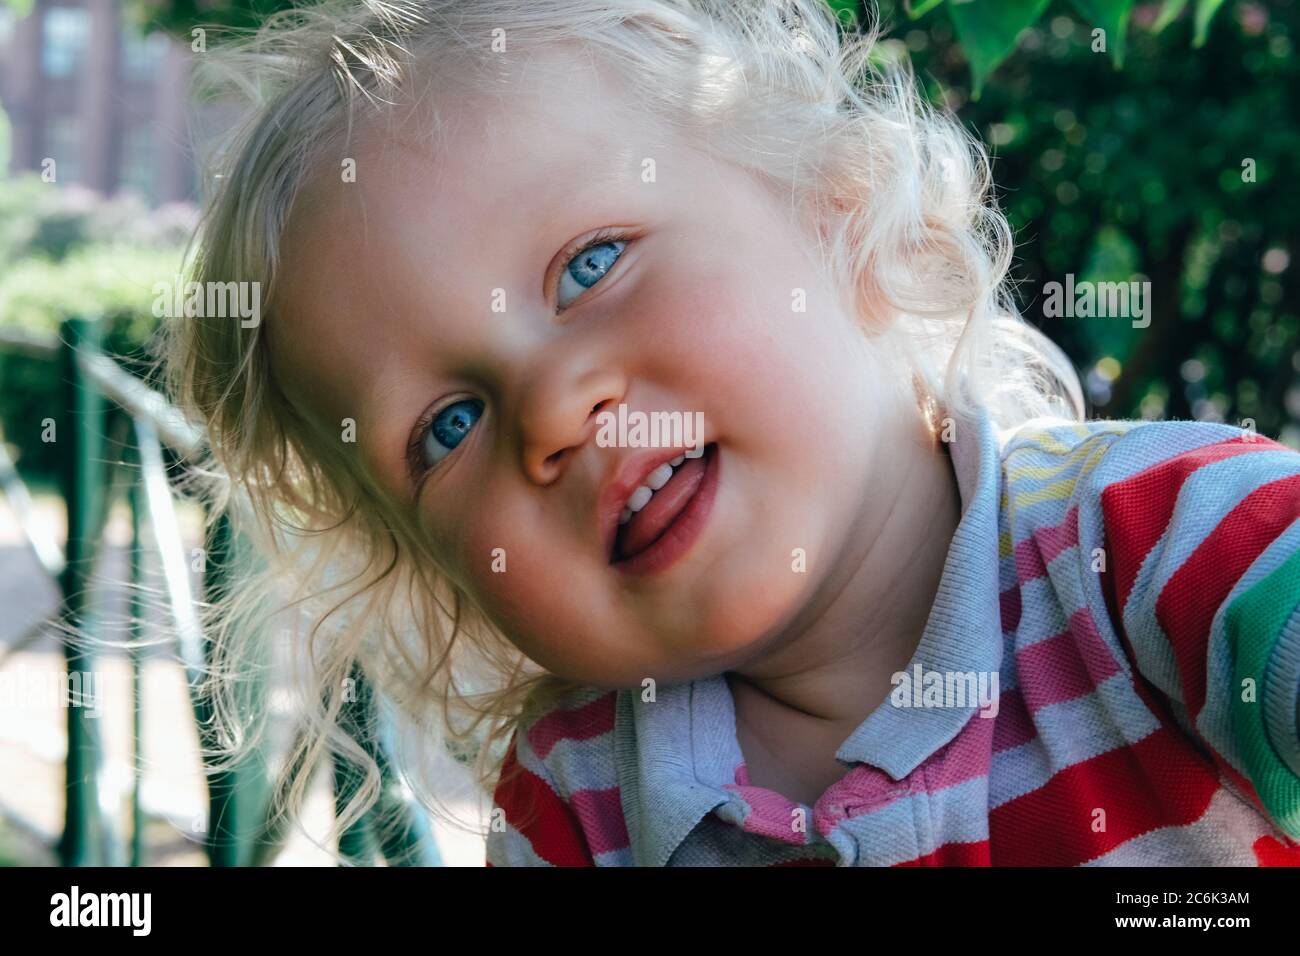 Portrait d'un joli petit garçon heureux avec des cheveux blonds et des yeux bleus, en train de faire un chapeau, de sourire et de jouer dans le parc. Retour au concept normal. Banque D'Images